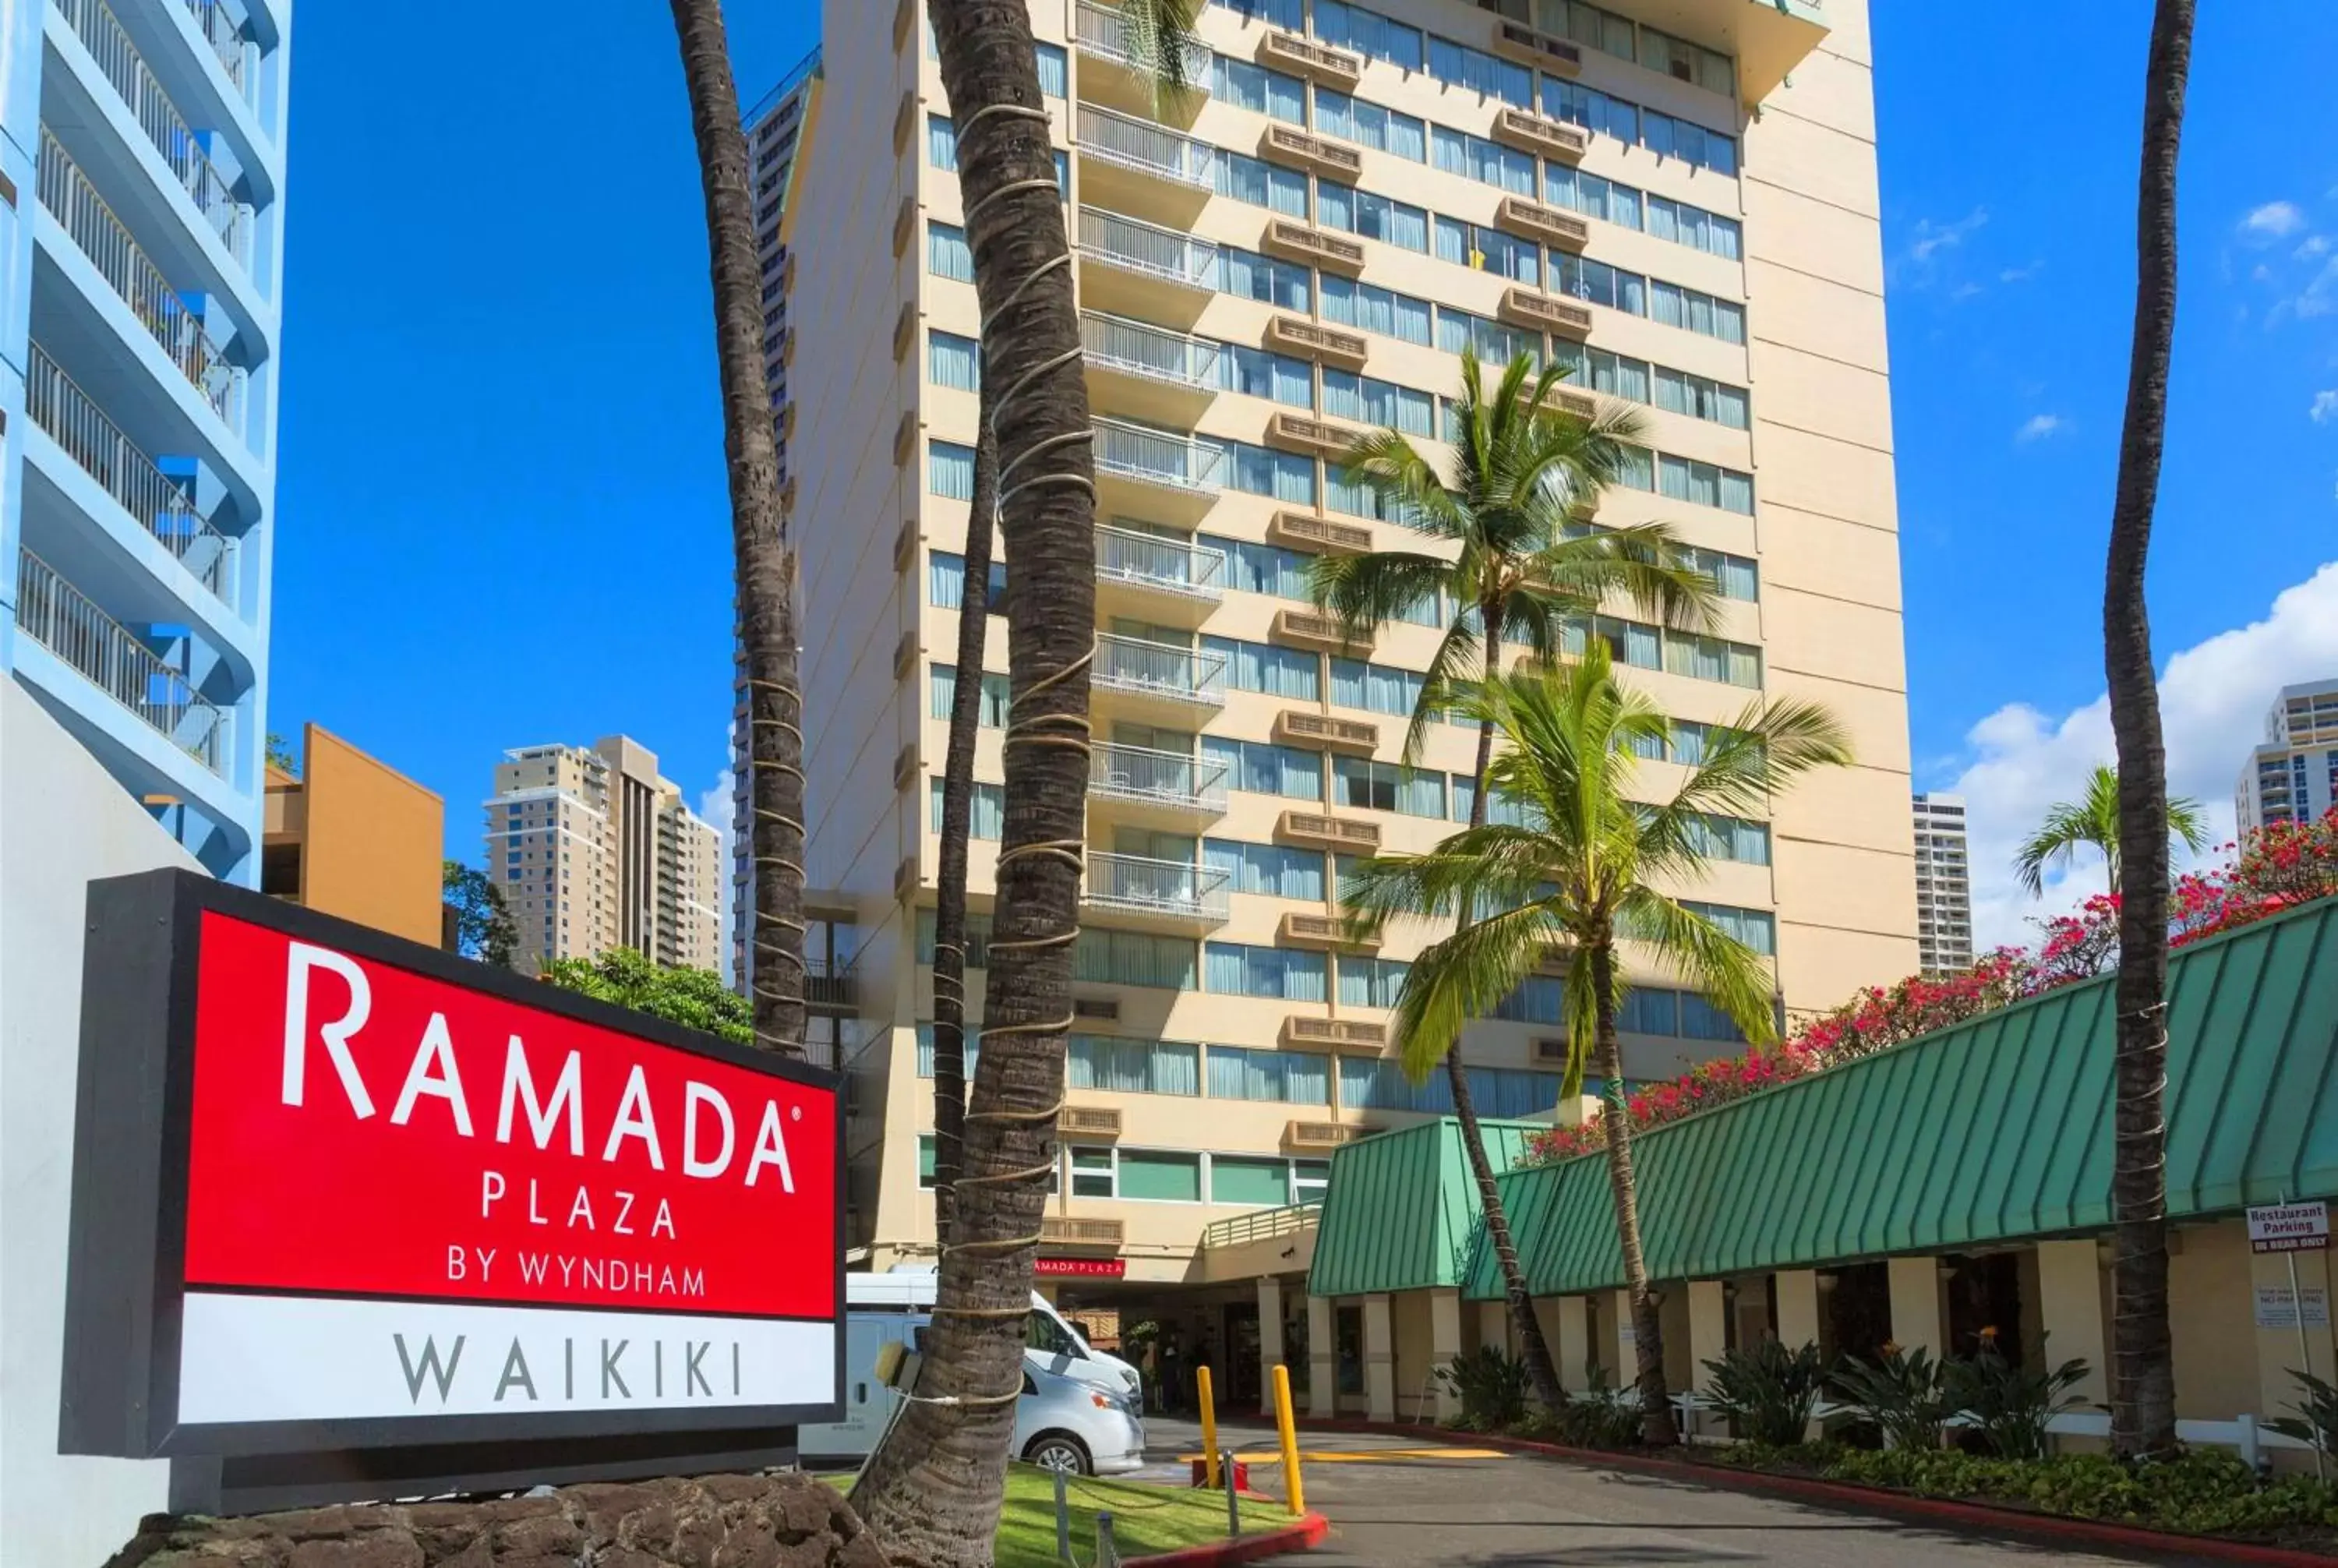 Property Building in Ramada Plaza by Wyndham Waikiki